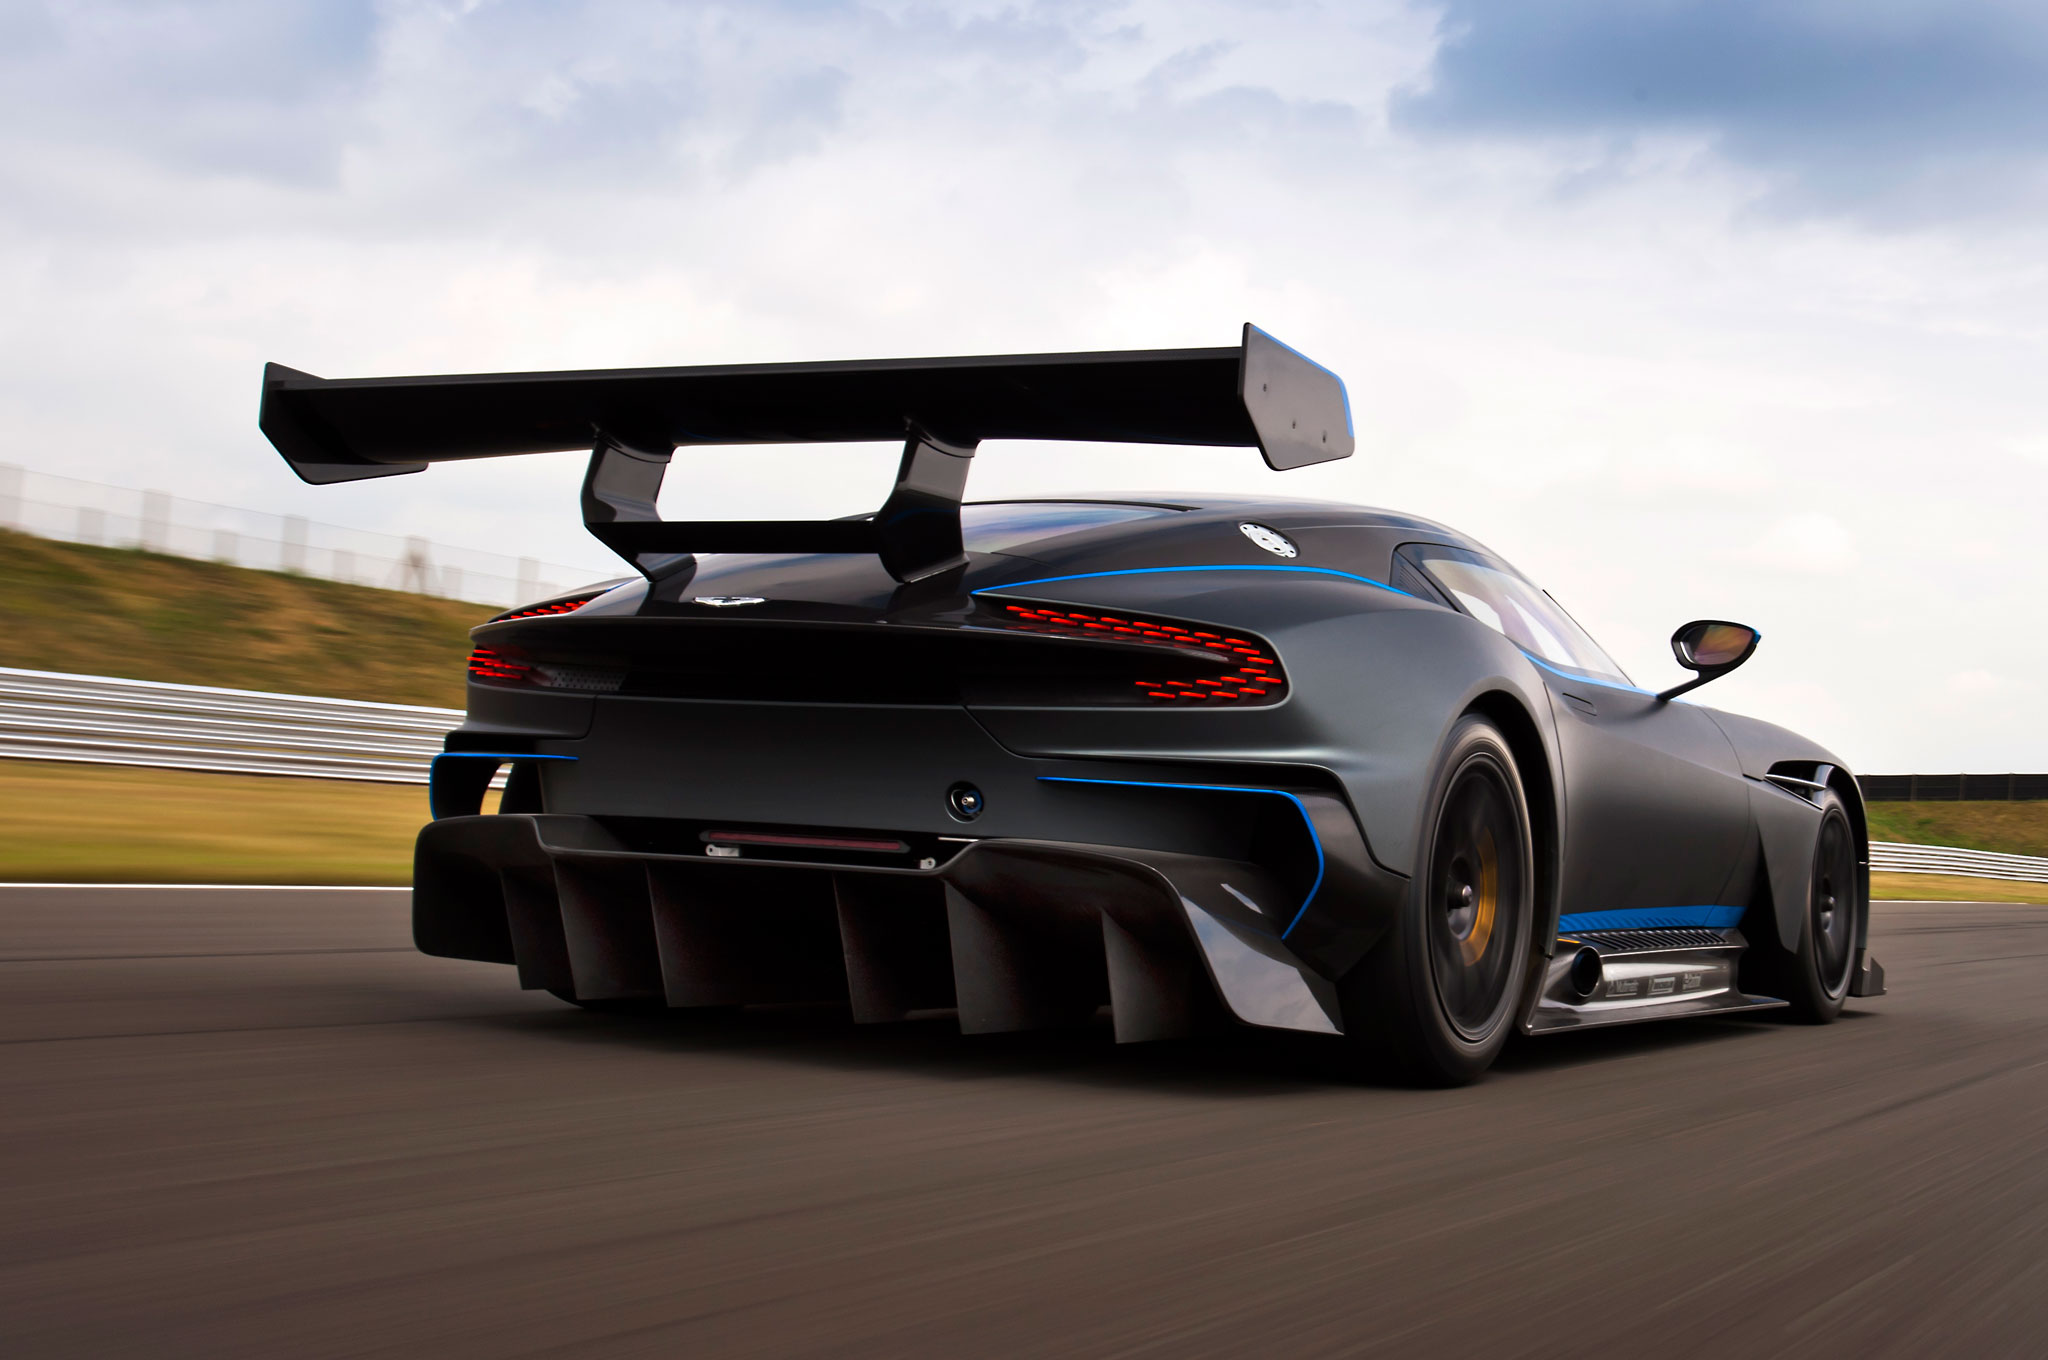 Aston-Martin-Vulcan-rear-three-quarter-in-motion-01.jpg